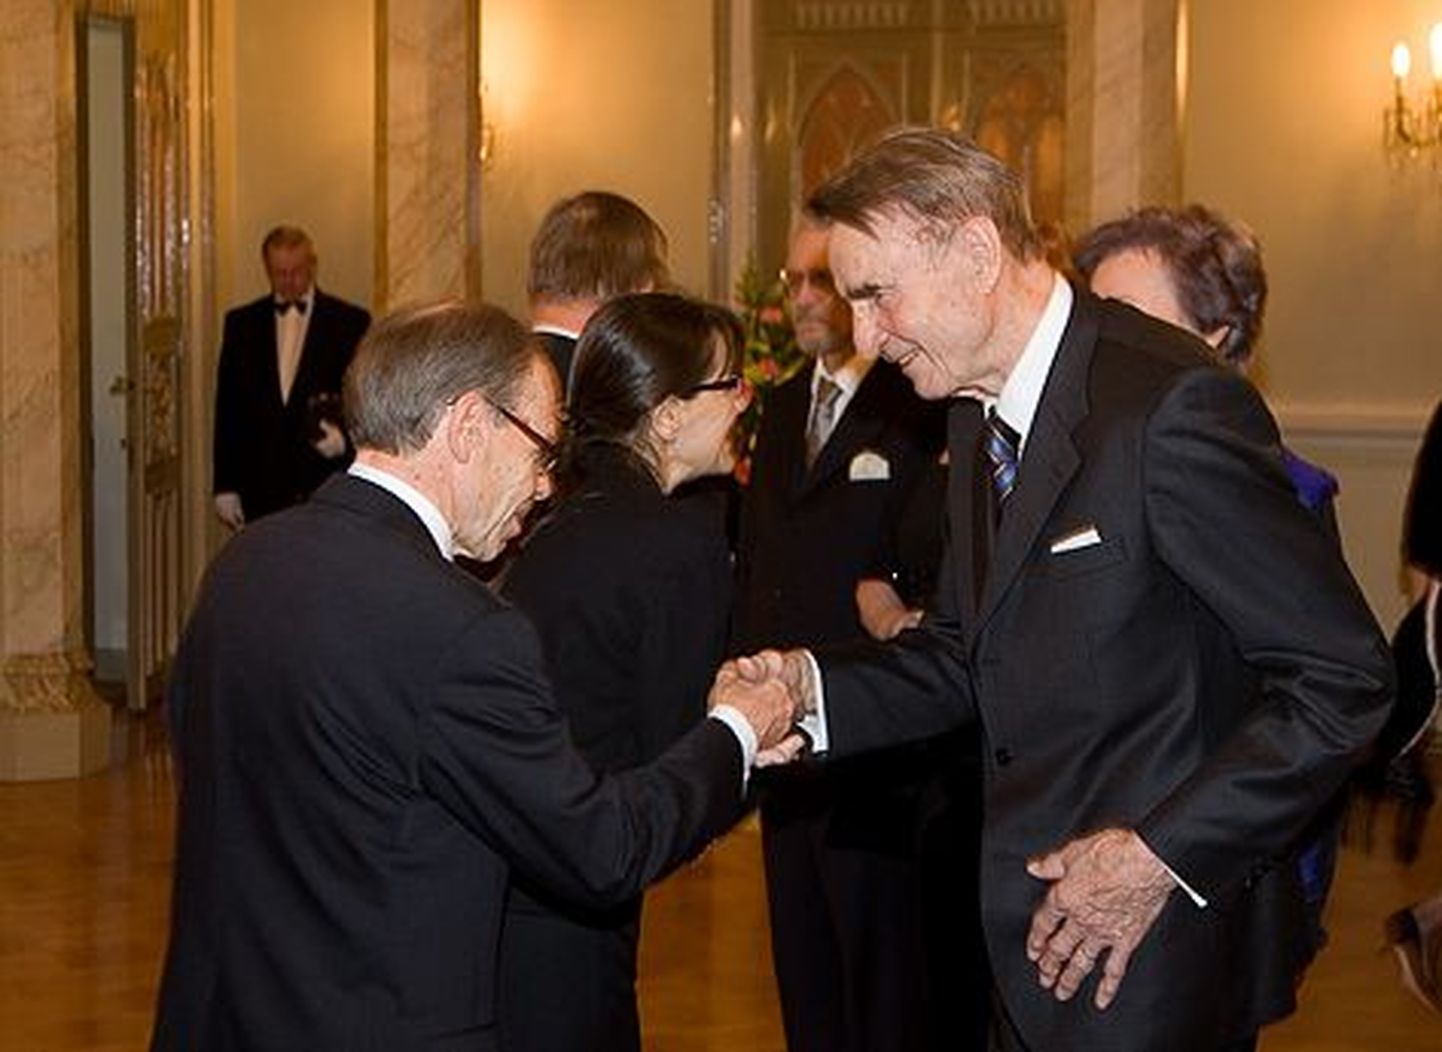 President Mauno Koivisto 85-sünnipäeval oli õnnitlejate hulgas ka presidendi kunagine kantseleiülem Jaakko Kalela